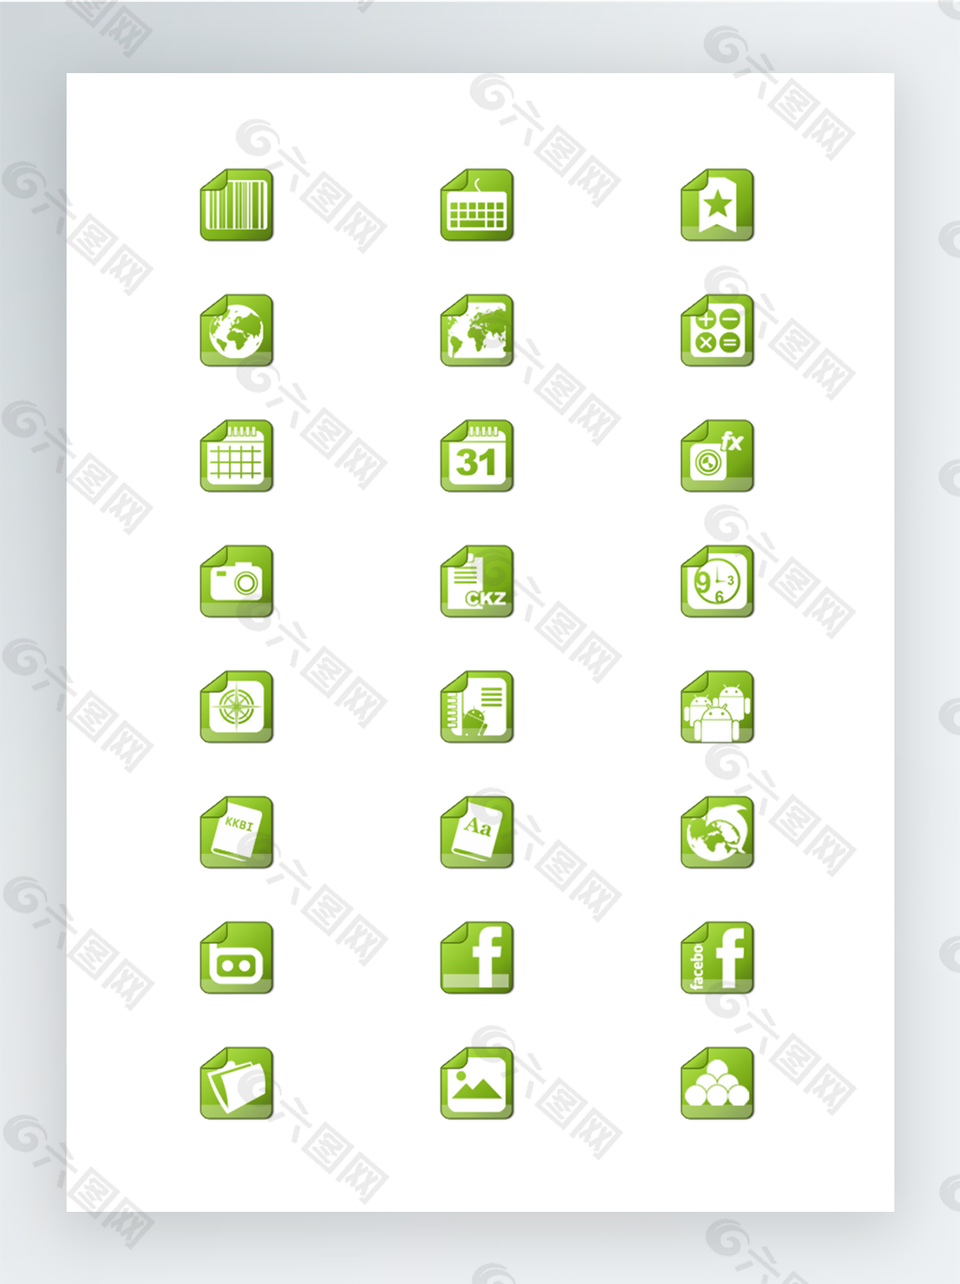 绿色折角风格的Android图标集